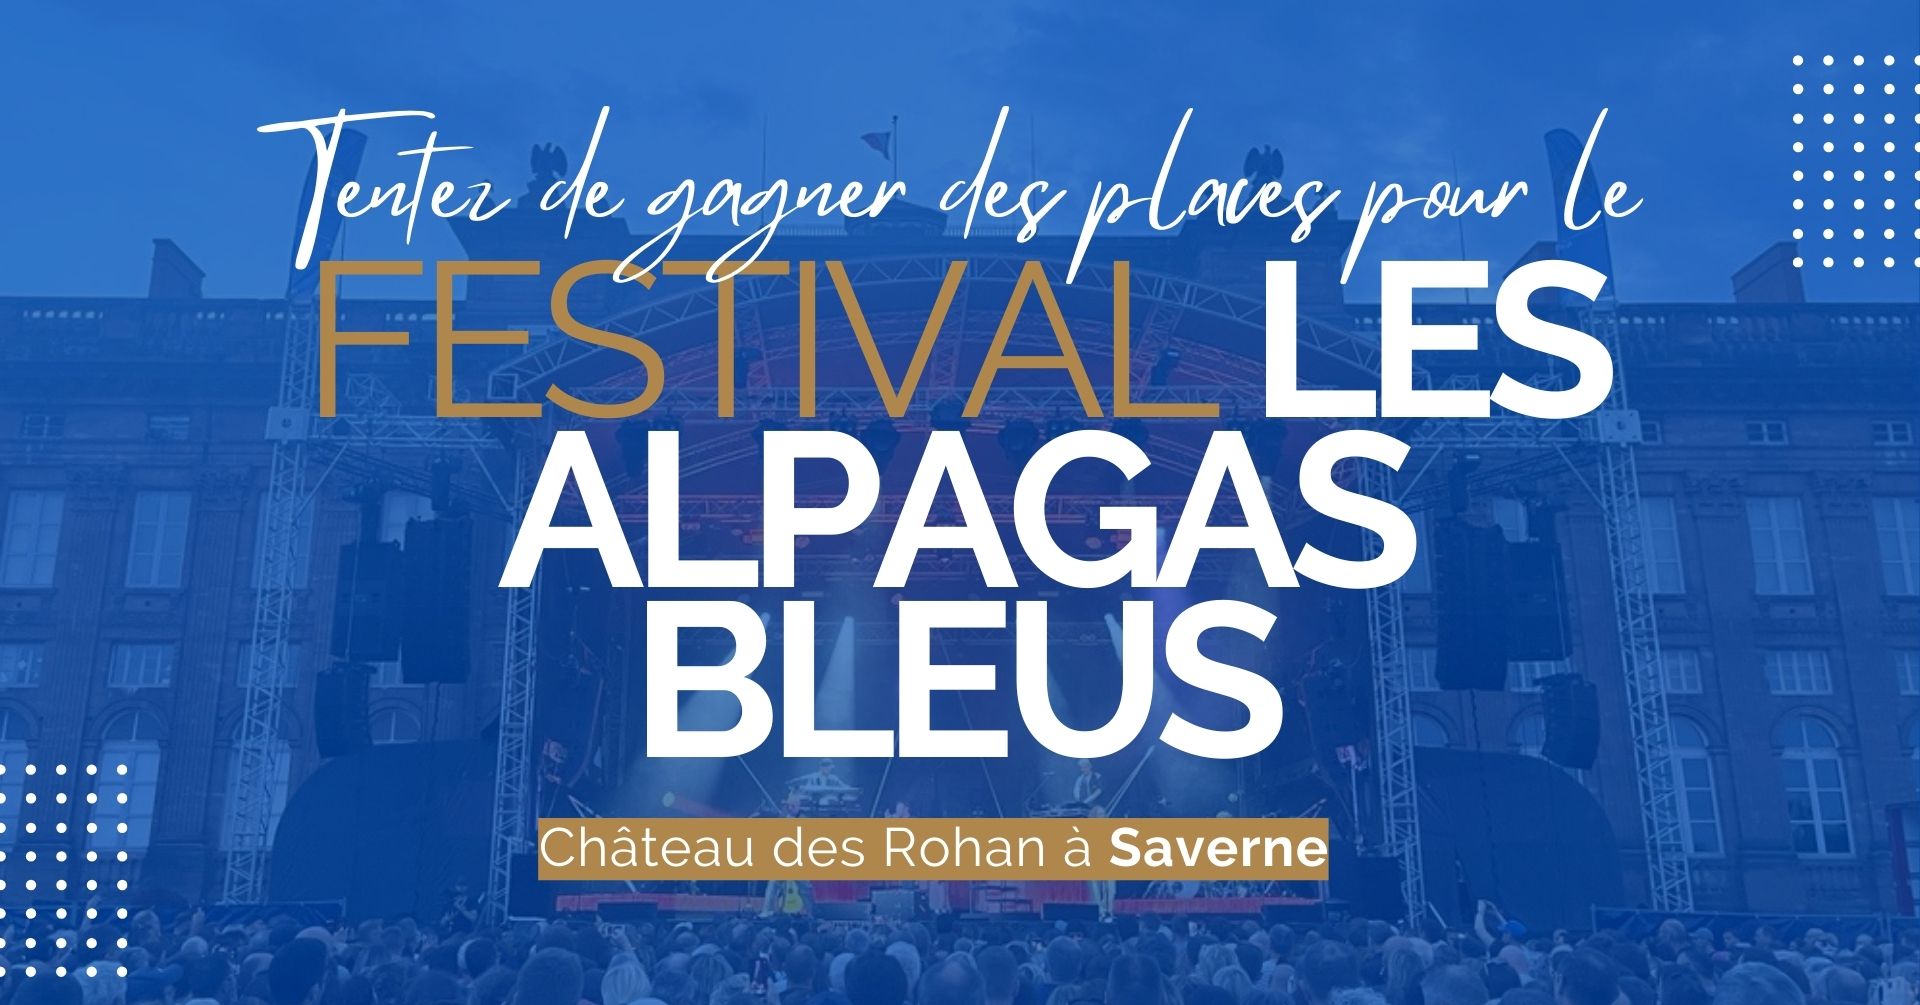 Jeu concours – Festival Les Alpagas Bleus